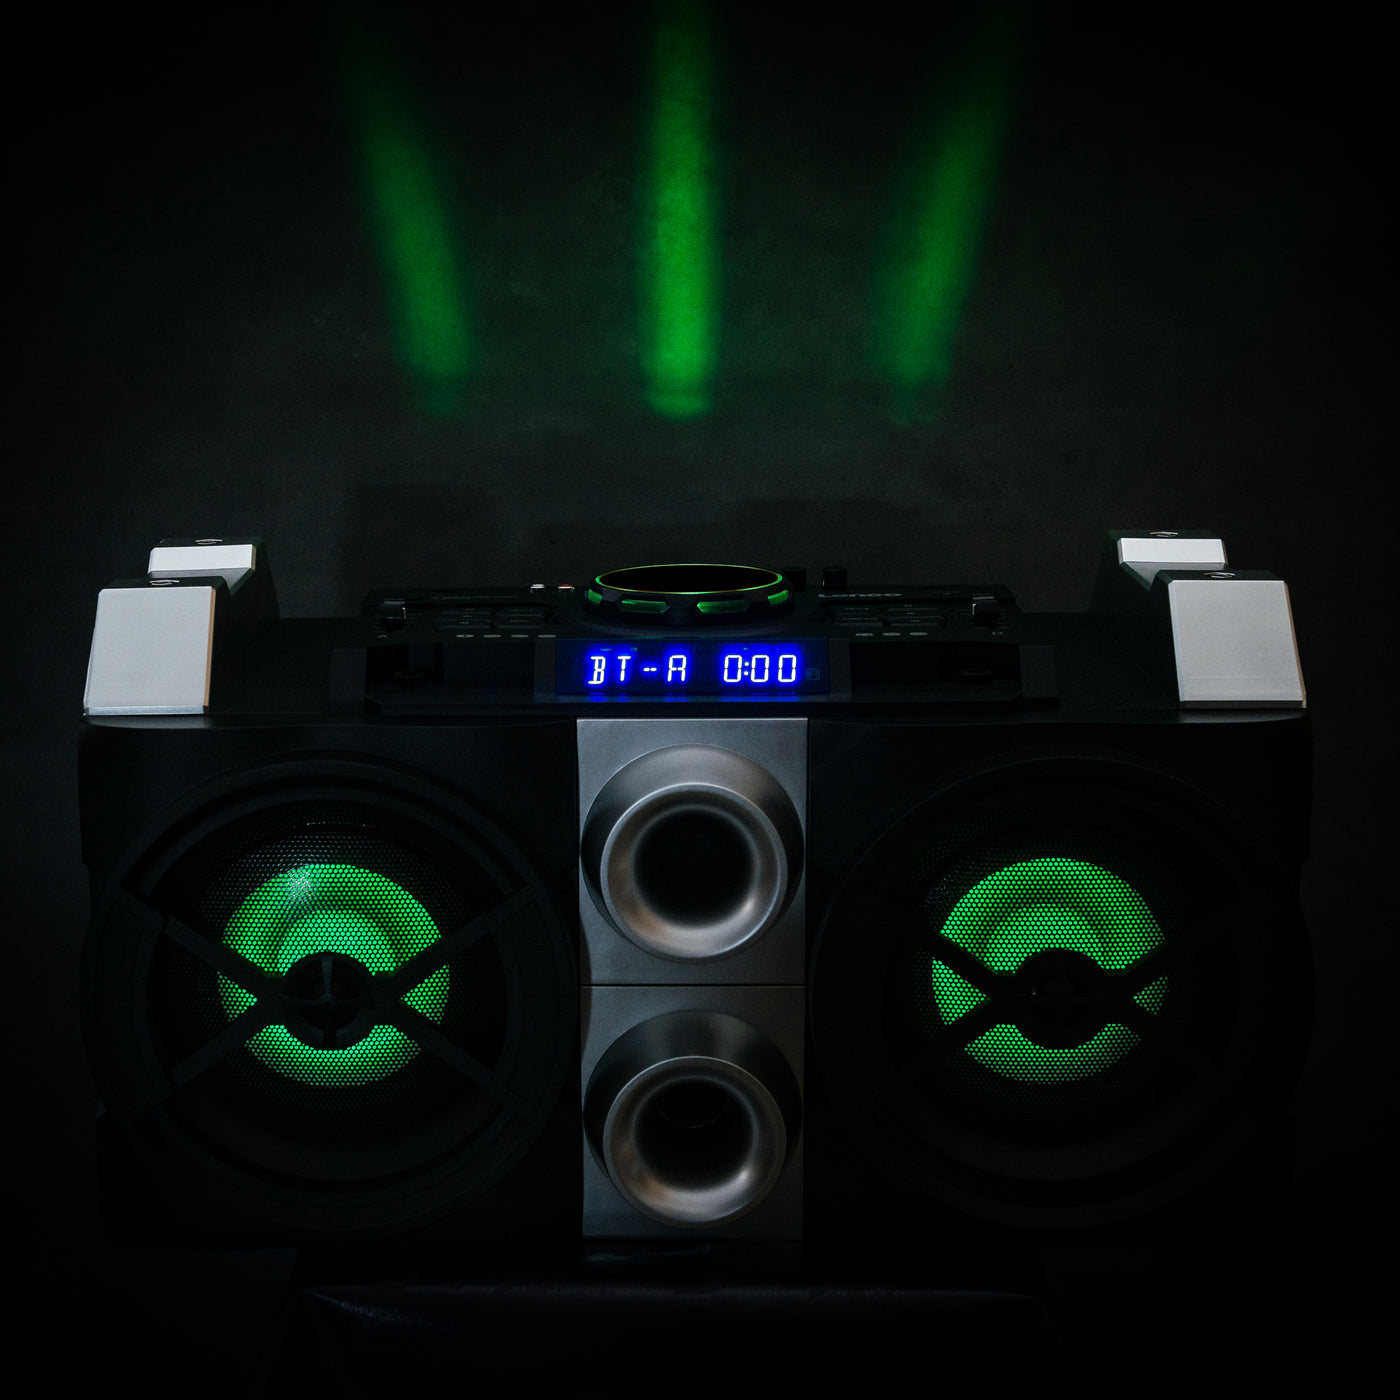 Lenco PMX-150 - Leistungsstarker Party-Lautsprecher mit DJ- und Mixfunktion - 150 Watt RMS - Bluetooth® - Integrierter Akku - Tischfunktion - Schwarz